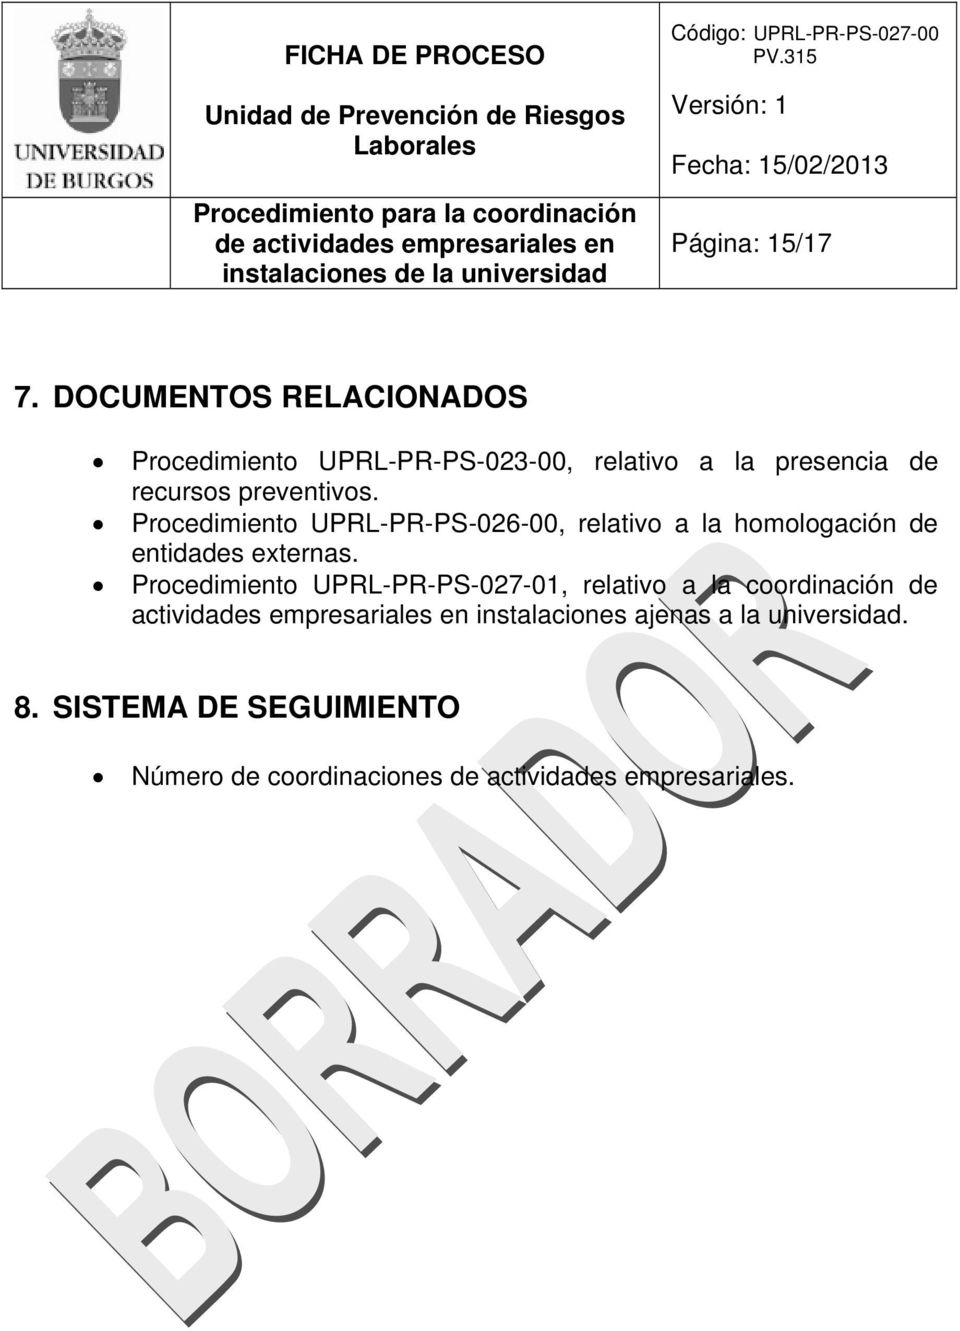 Procedimiento UPRL-PR-PS-026-00, relativo a la homologación de entidades externas.